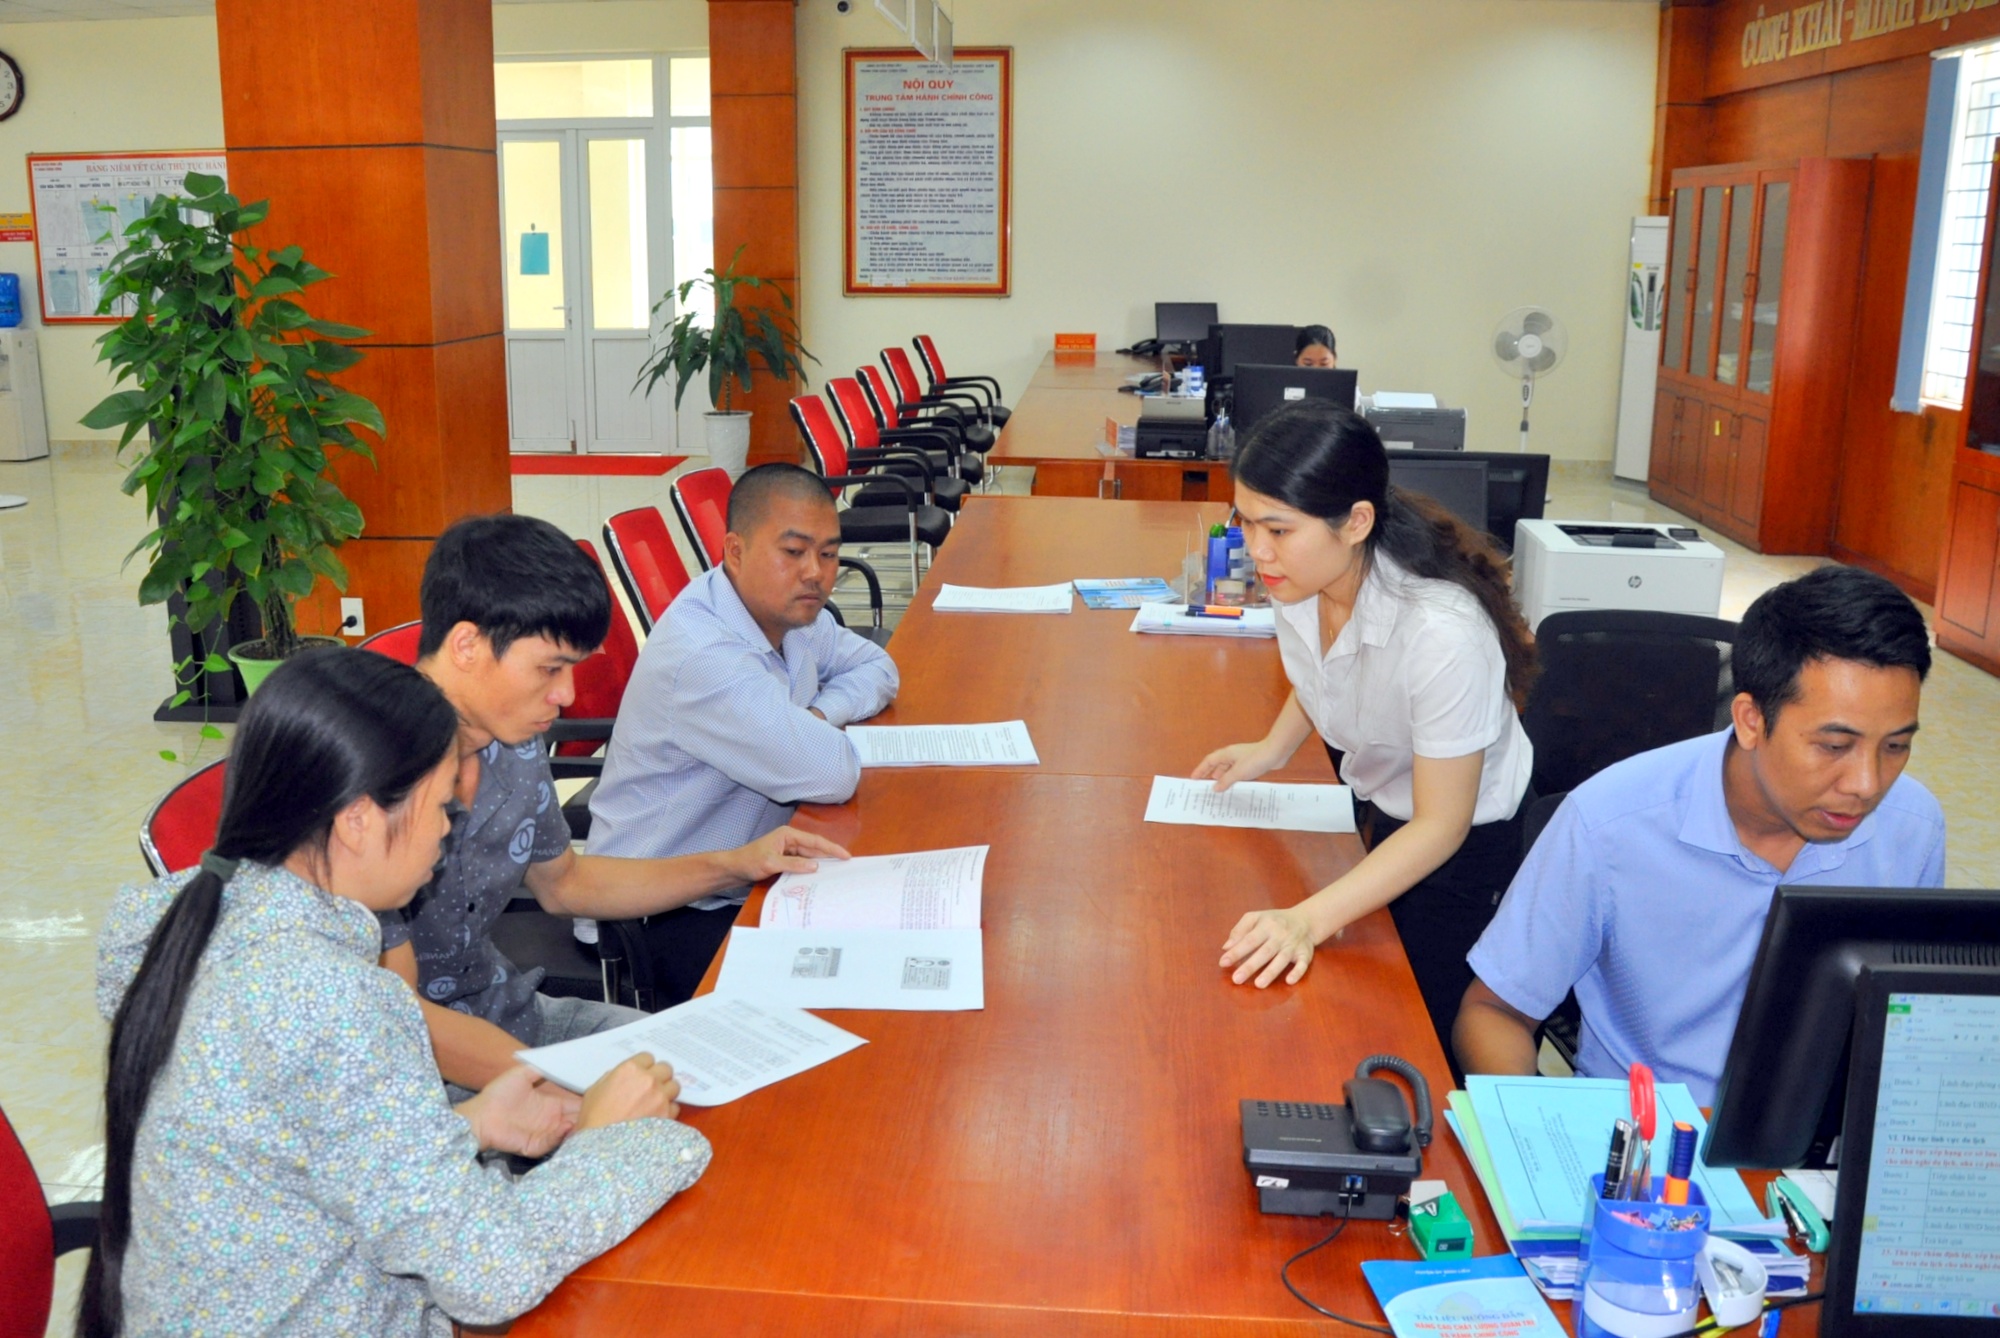 Cán bộ thường trực tại Trung tâm Hành chính công huyện Bình Liêu tận tình hướng dẫn người dân giải quyết thủ tục hành chính.